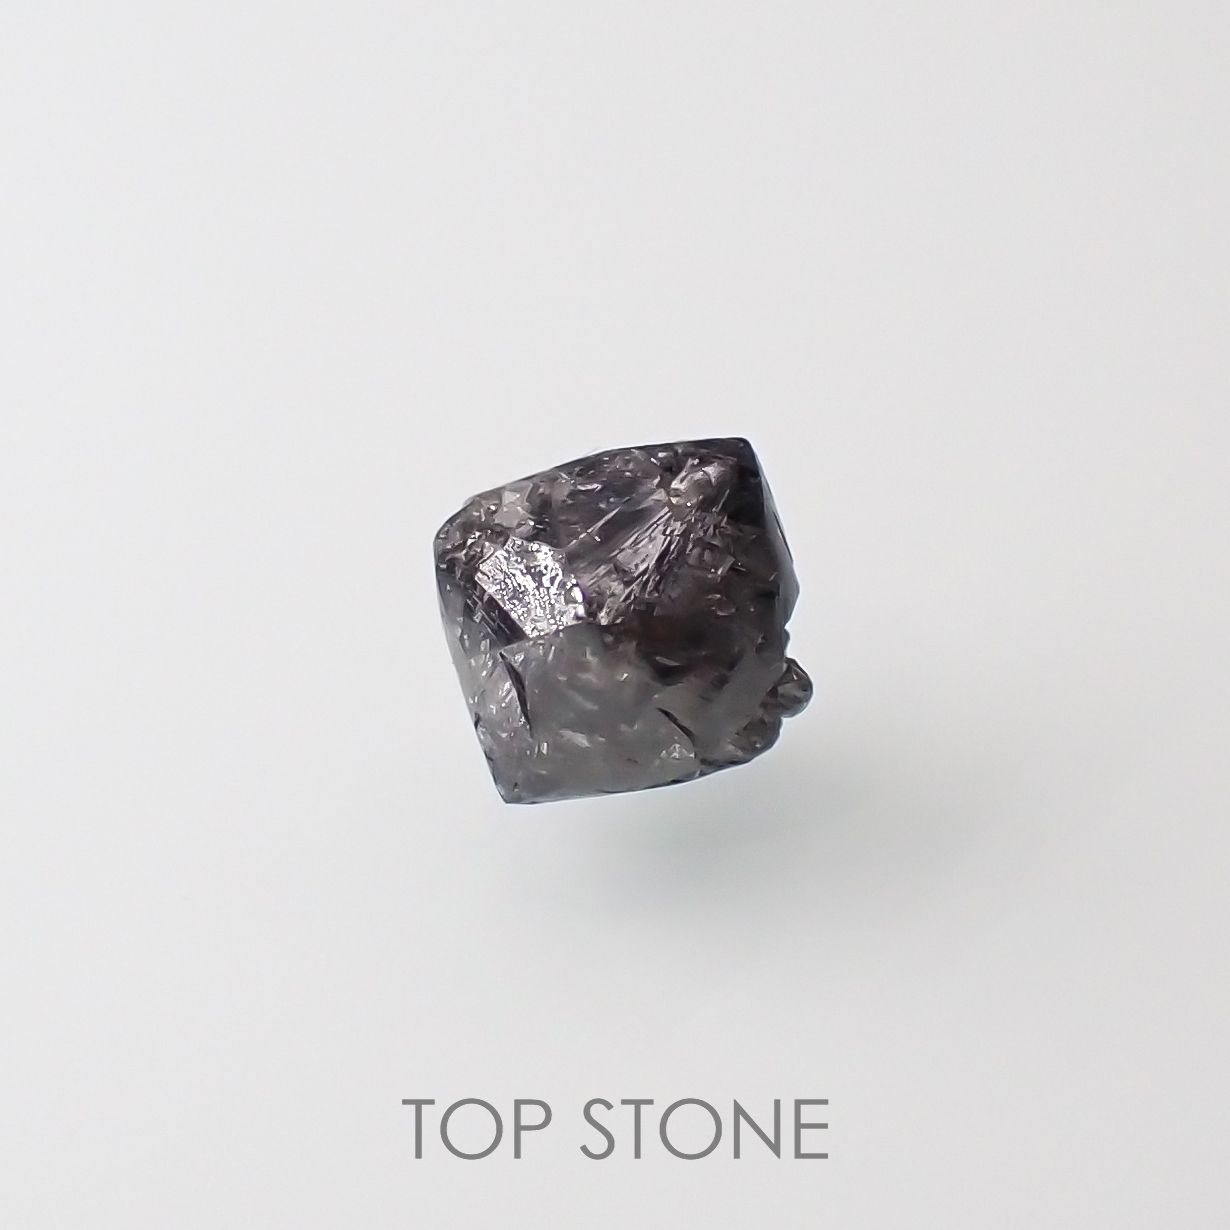 宝石名から探す / ダイヤモンド / ダイヤモンド原石 通販 | TOP STONE 